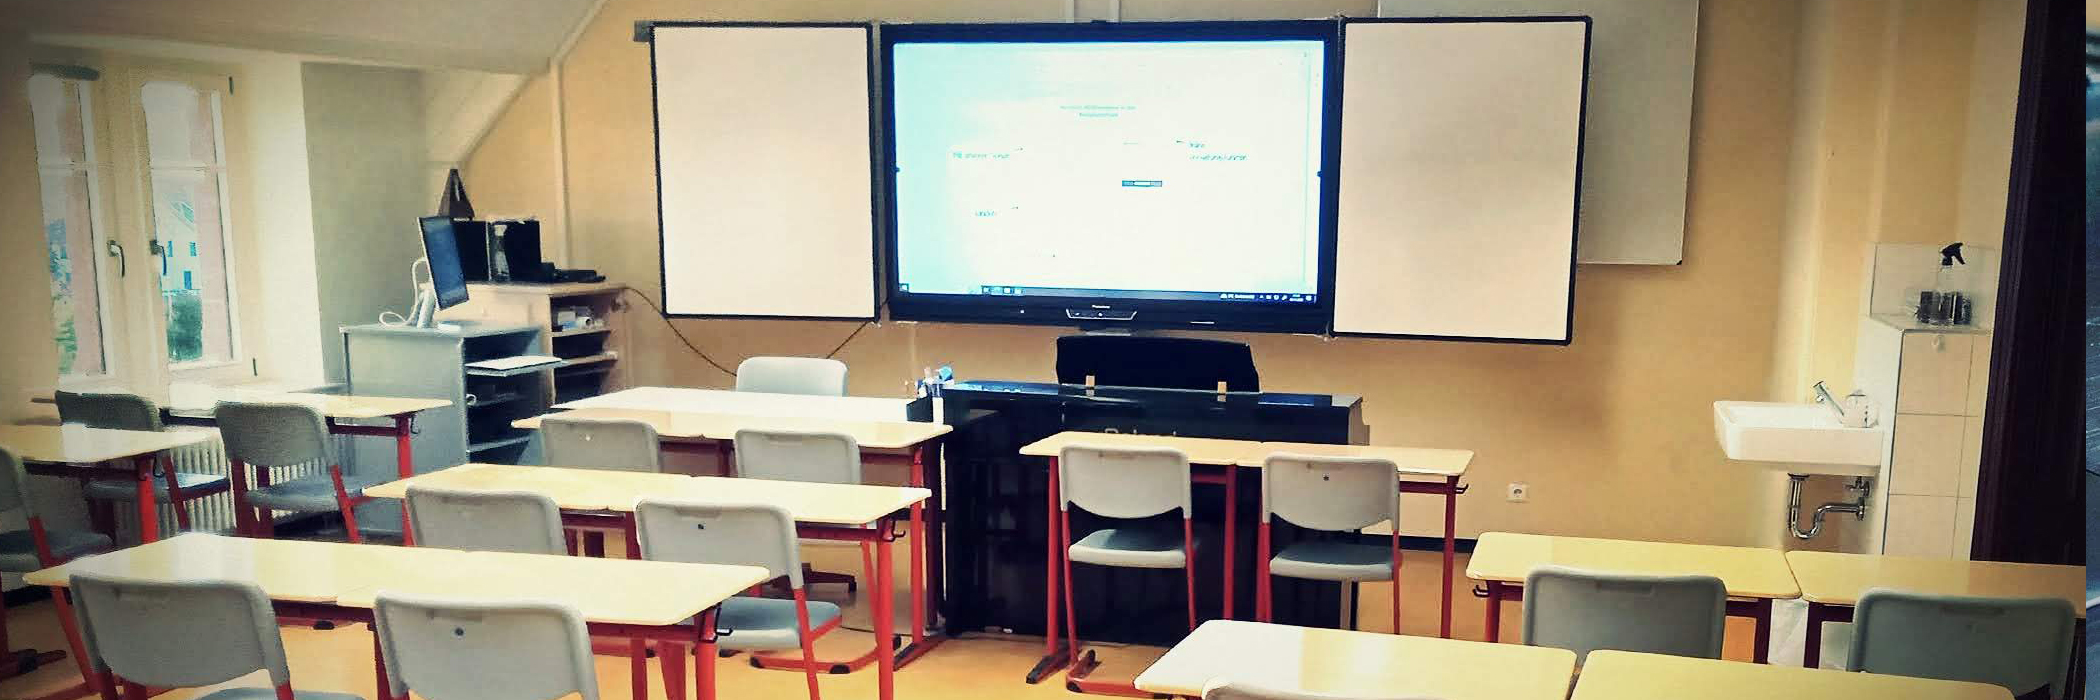 Unterrichtsraum in einer Schule mit leeren Schulbänken, digitaler Tafel und einem Klavier